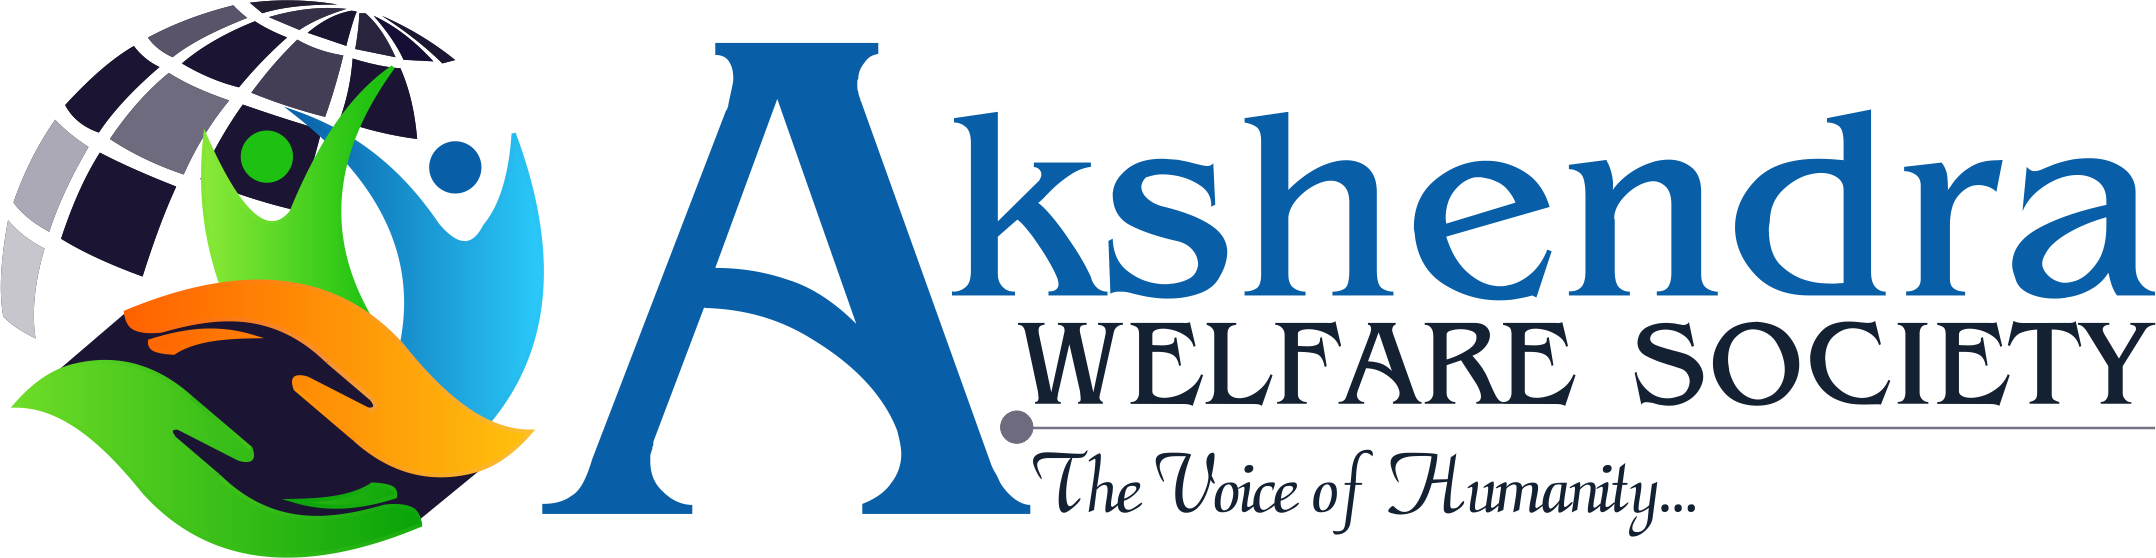 Akshendra Welfare Soceity